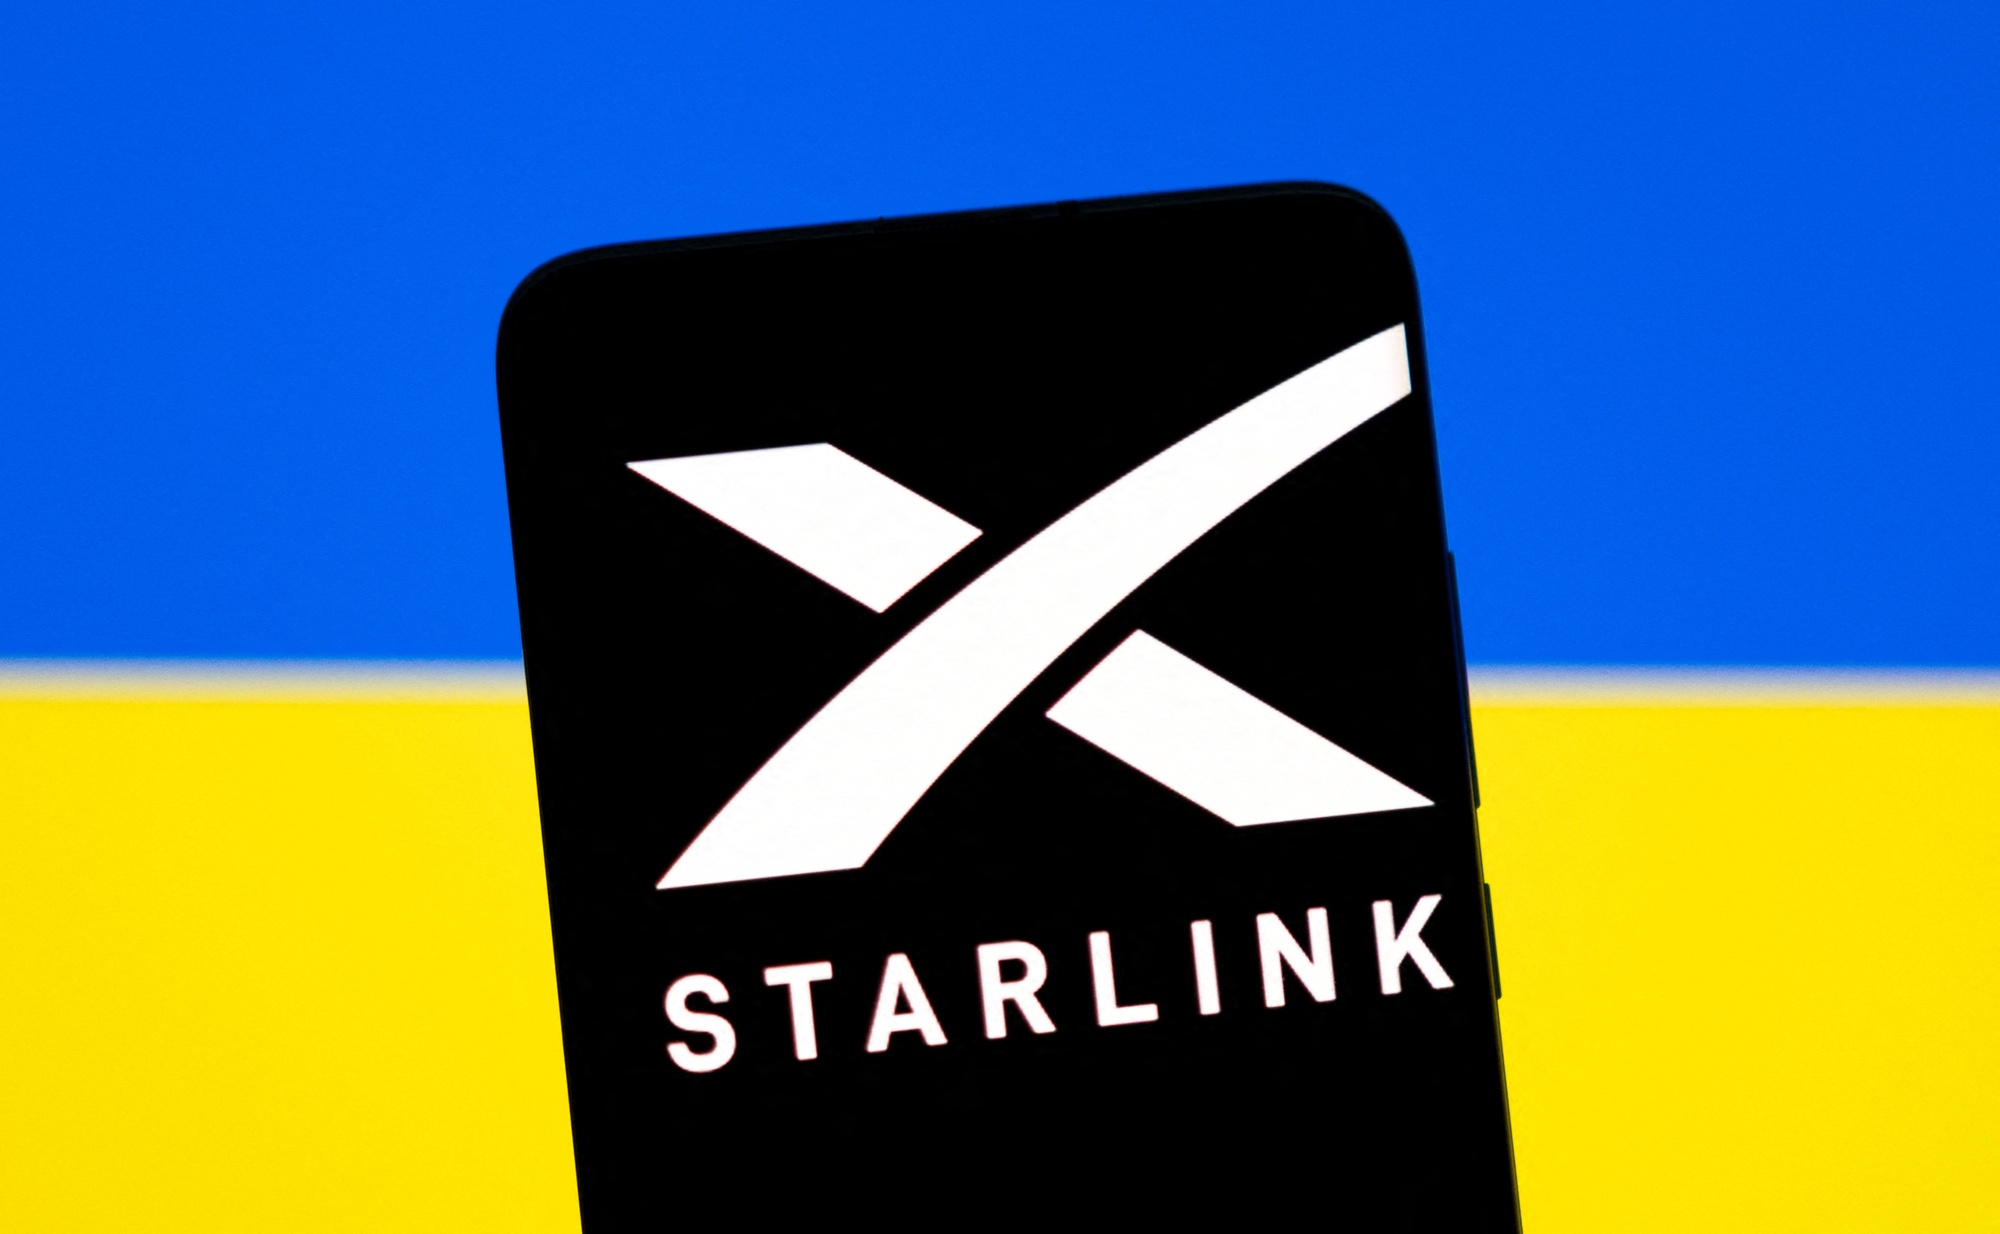 Tỉ phú Elon Musk chỉ đạo tắt tín hiệu Starlink gần Crimea? - Ảnh 1.